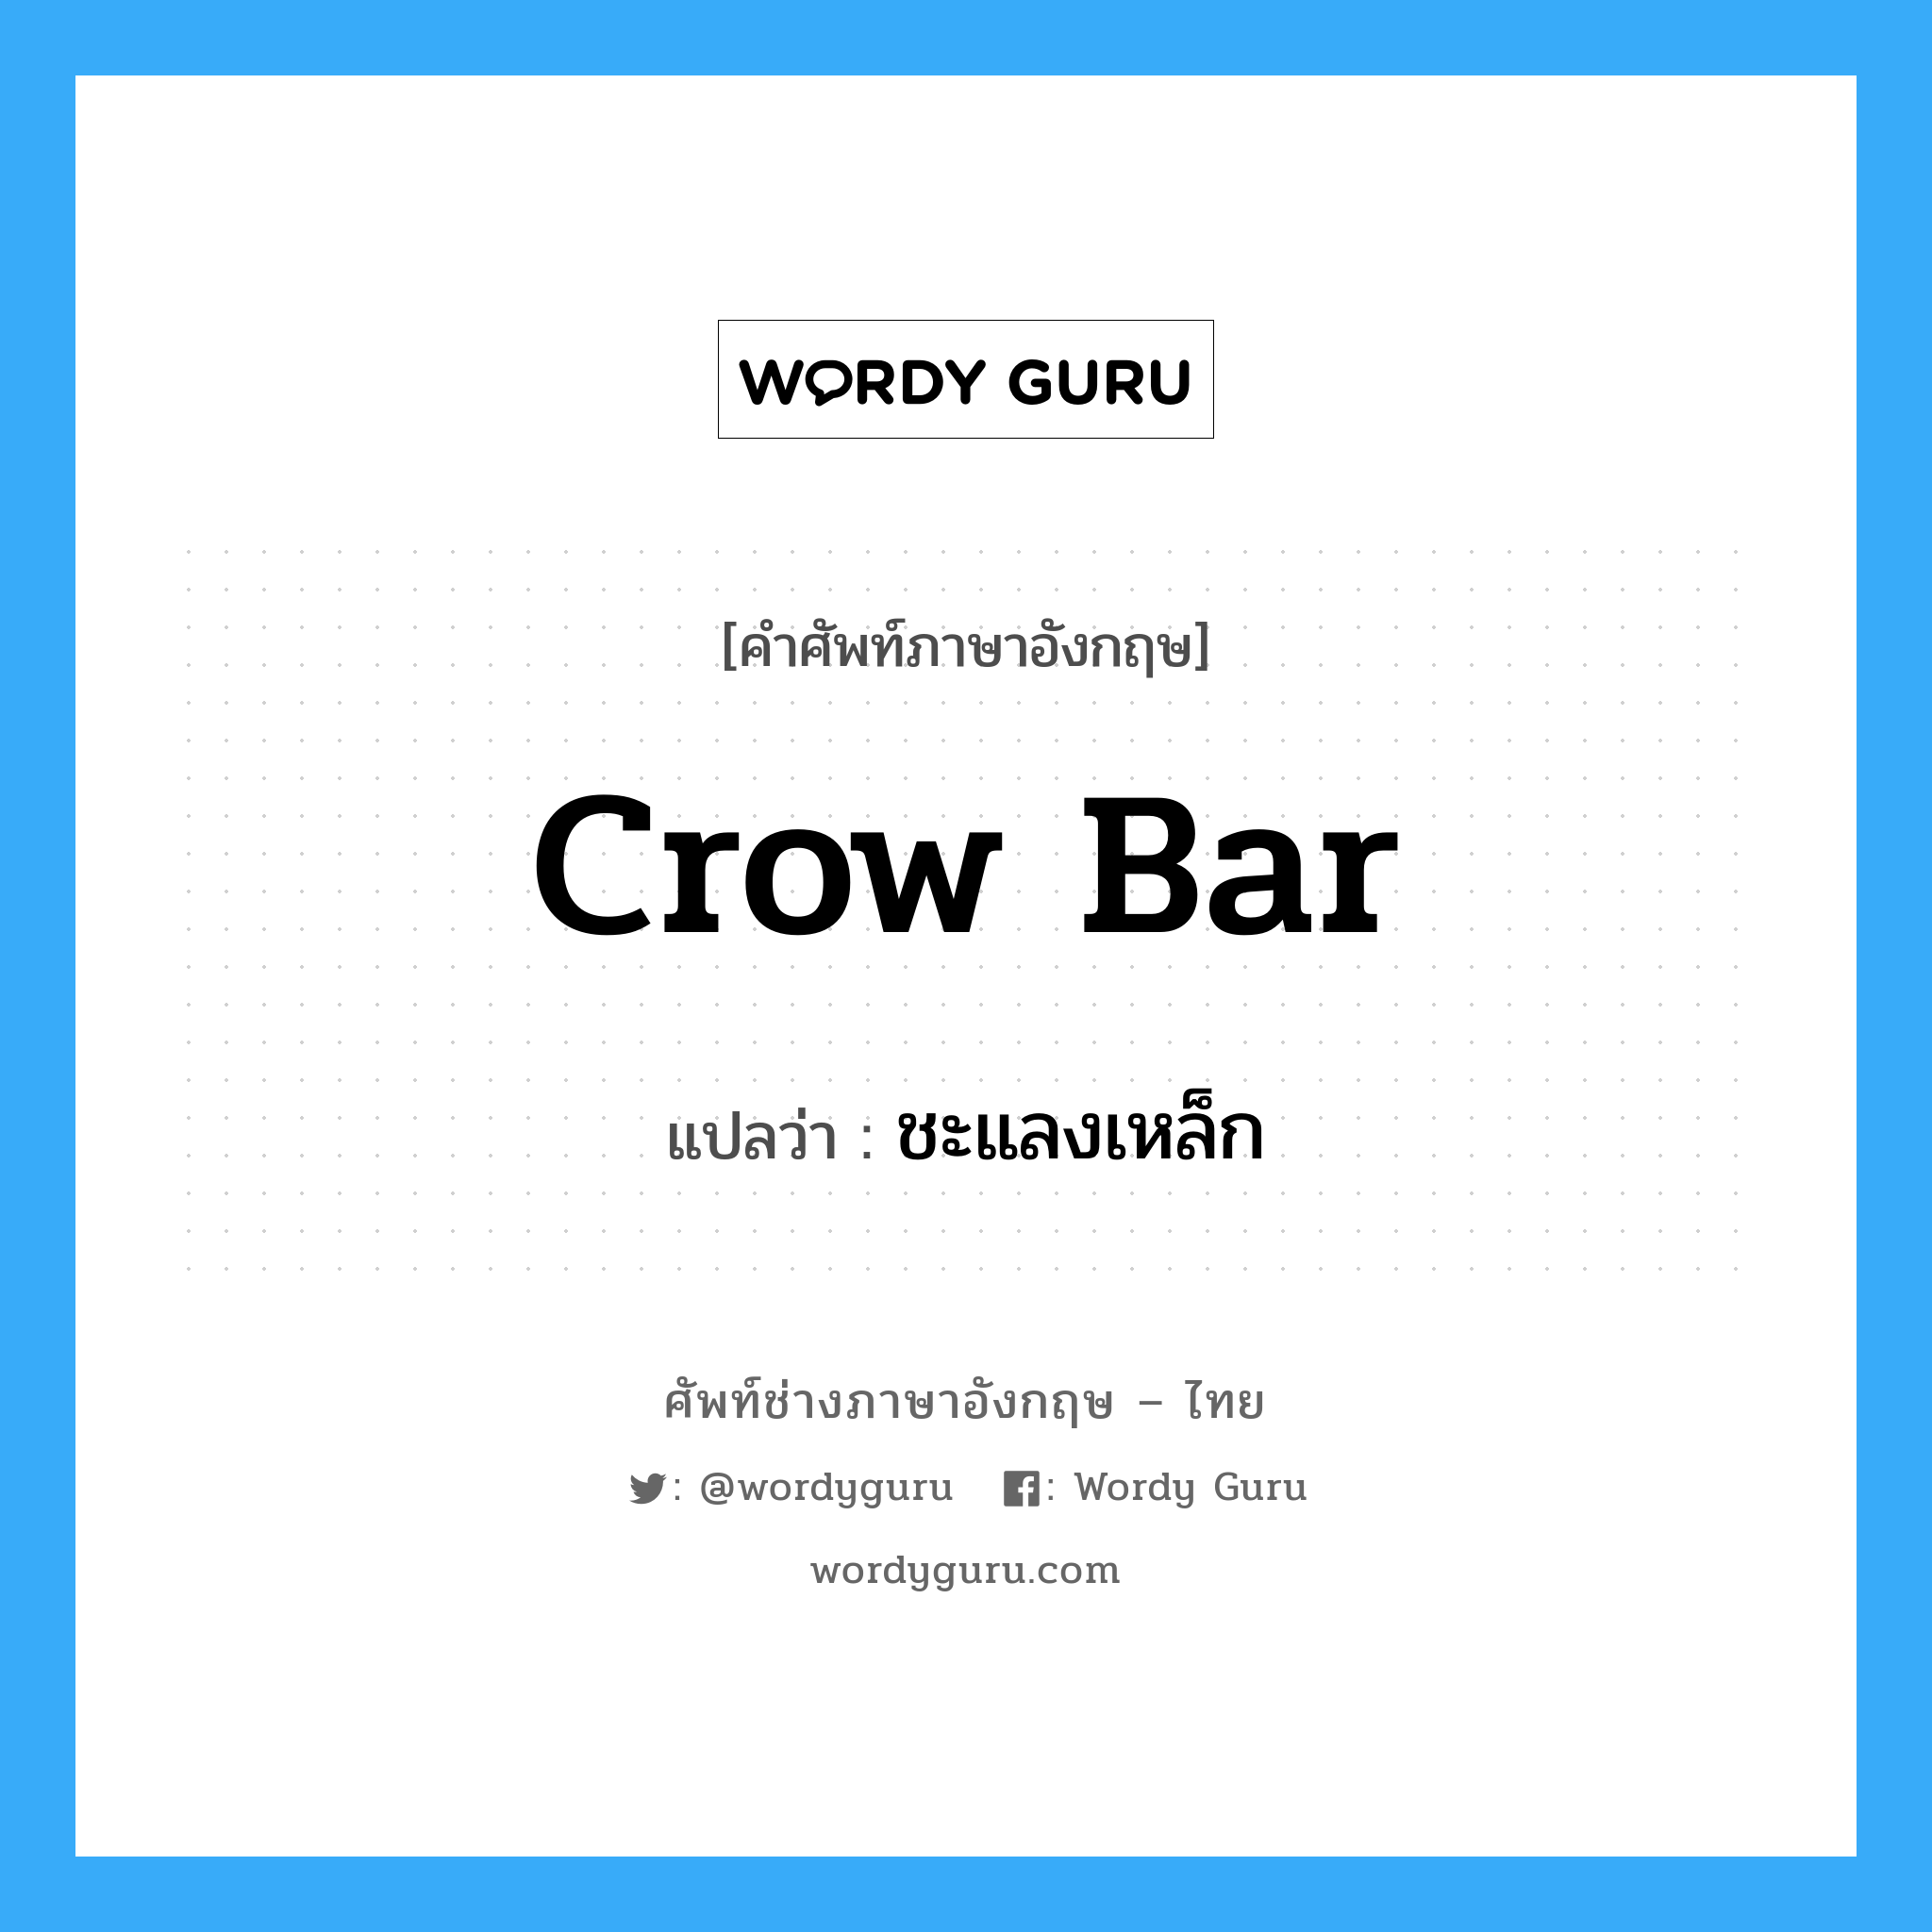 ชะแลงเหล็ก ภาษาอังกฤษ?, คำศัพท์ช่างภาษาอังกฤษ - ไทย ชะแลงเหล็ก คำศัพท์ภาษาอังกฤษ ชะแลงเหล็ก แปลว่า crow bar